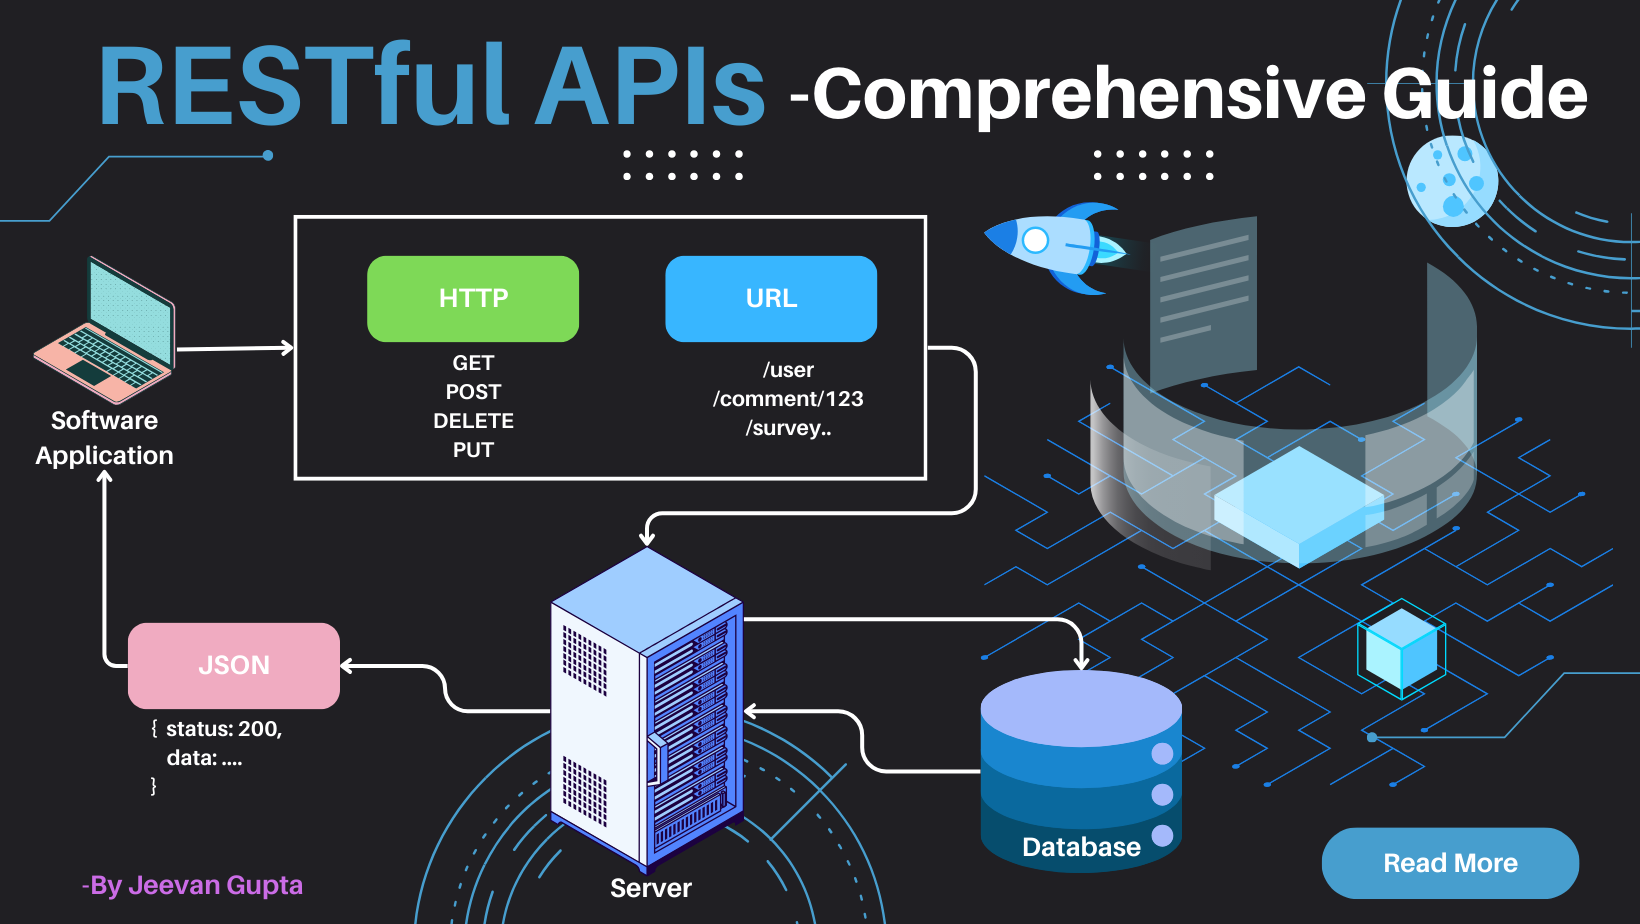 RESTful APIs - Comprehensive Guide